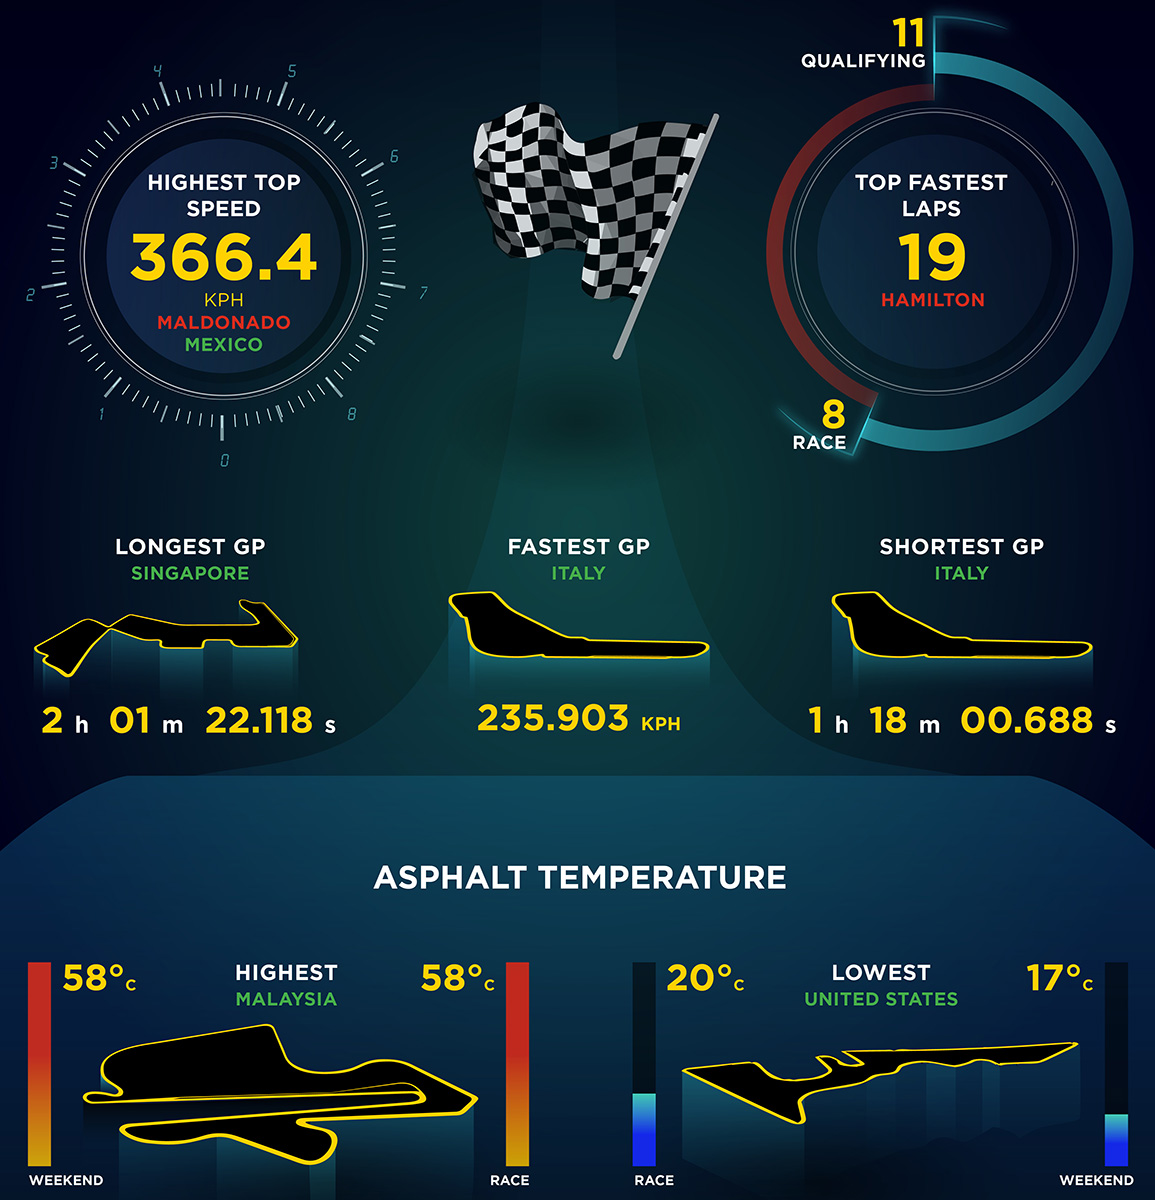 Statistika Pirelli týkající se závodů a teplot v nich zaznamenaných